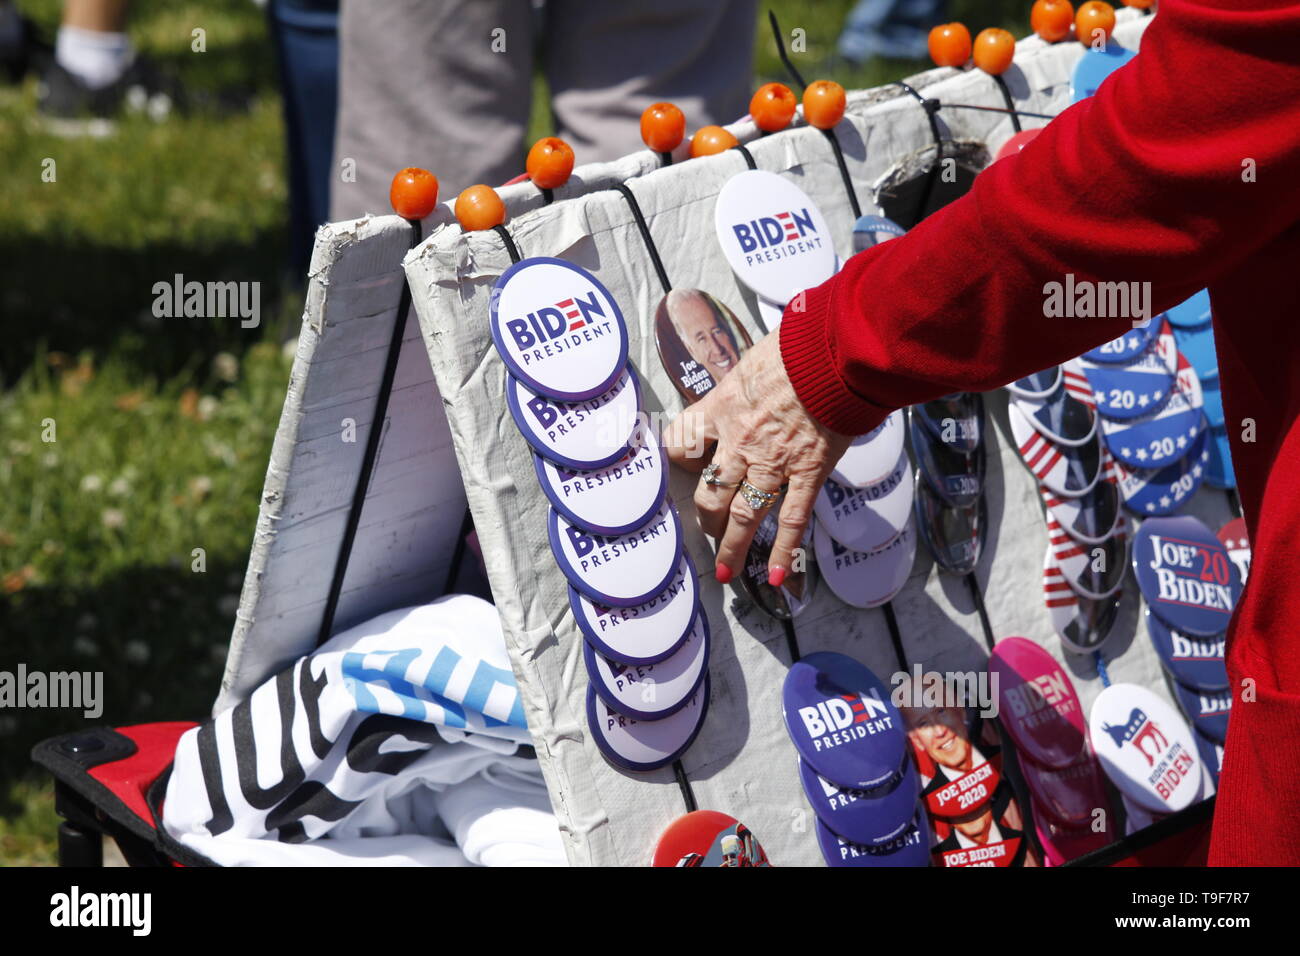 Philadelphia, PA USA - Mai 18, 2019 : Une vieille femme de la classe moyenne supérieure sélectionne un bouton campagne devant Joe Biden Lancement officiel du rassemblement pour la campagne 2020 élection présidentielle américaine à Philadelphie, Pennsylvanie. Banque D'Images